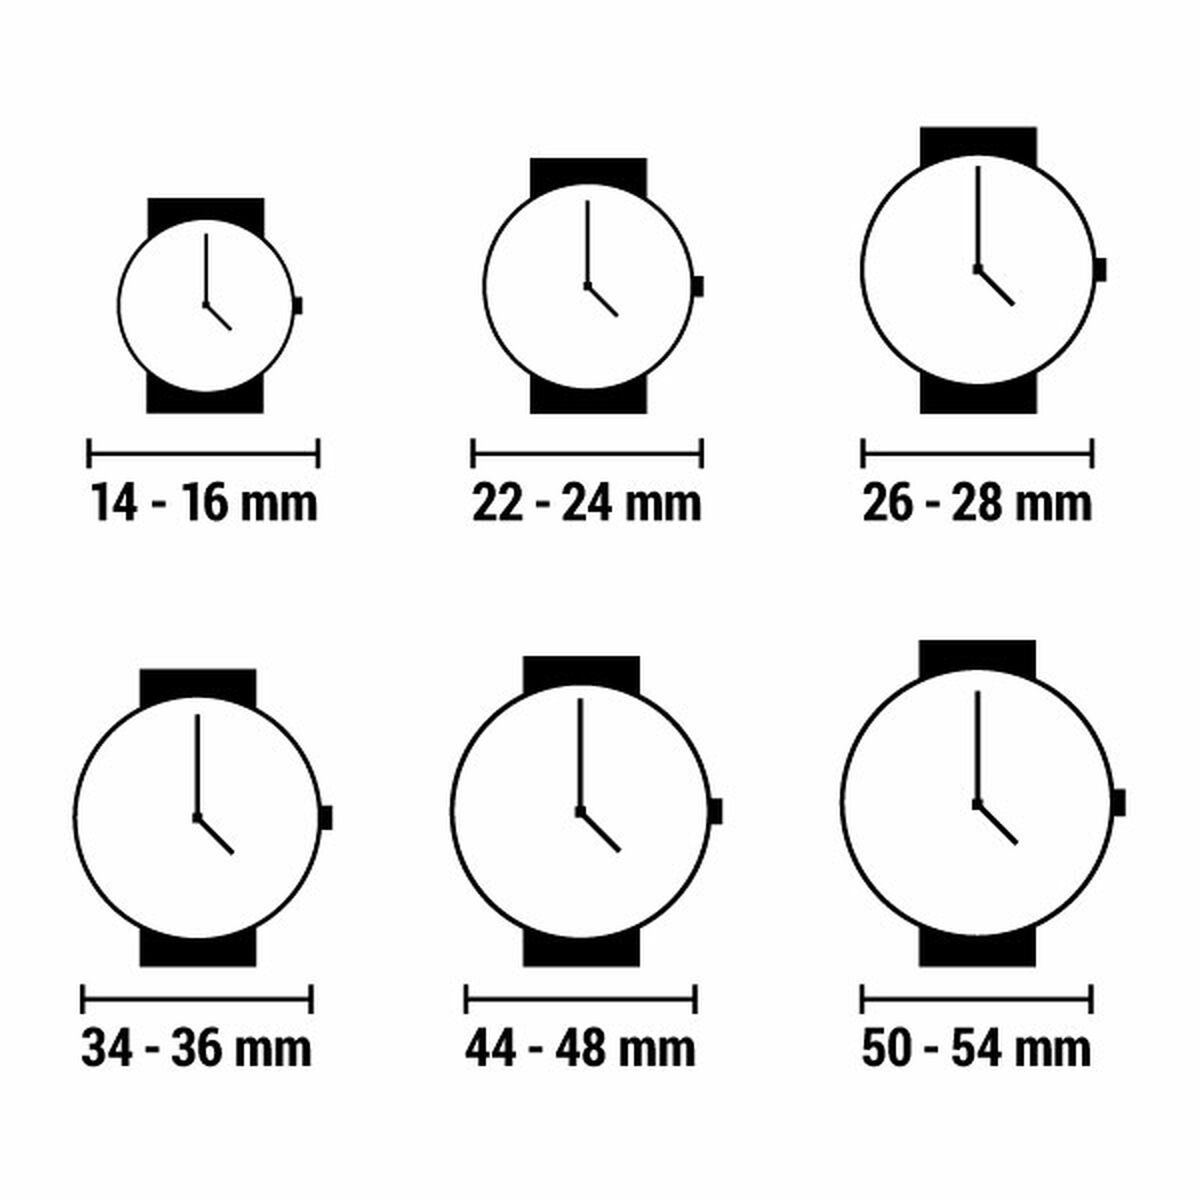 Horloge Dames Radiant RA520603 (Ø 34 mm)